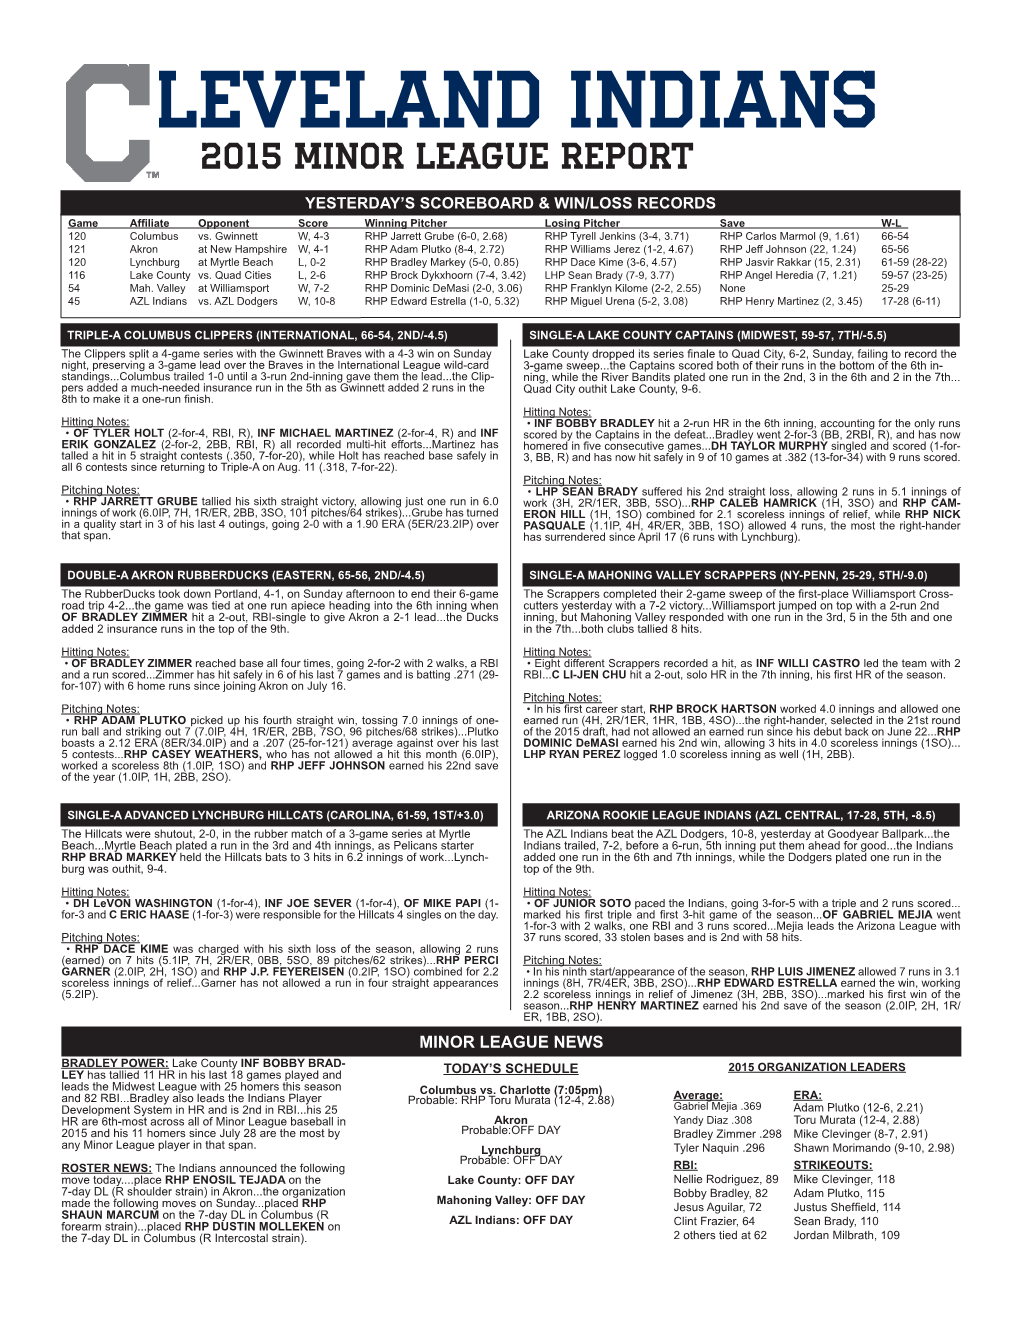 Leveland Indians 2015 Minor League Report